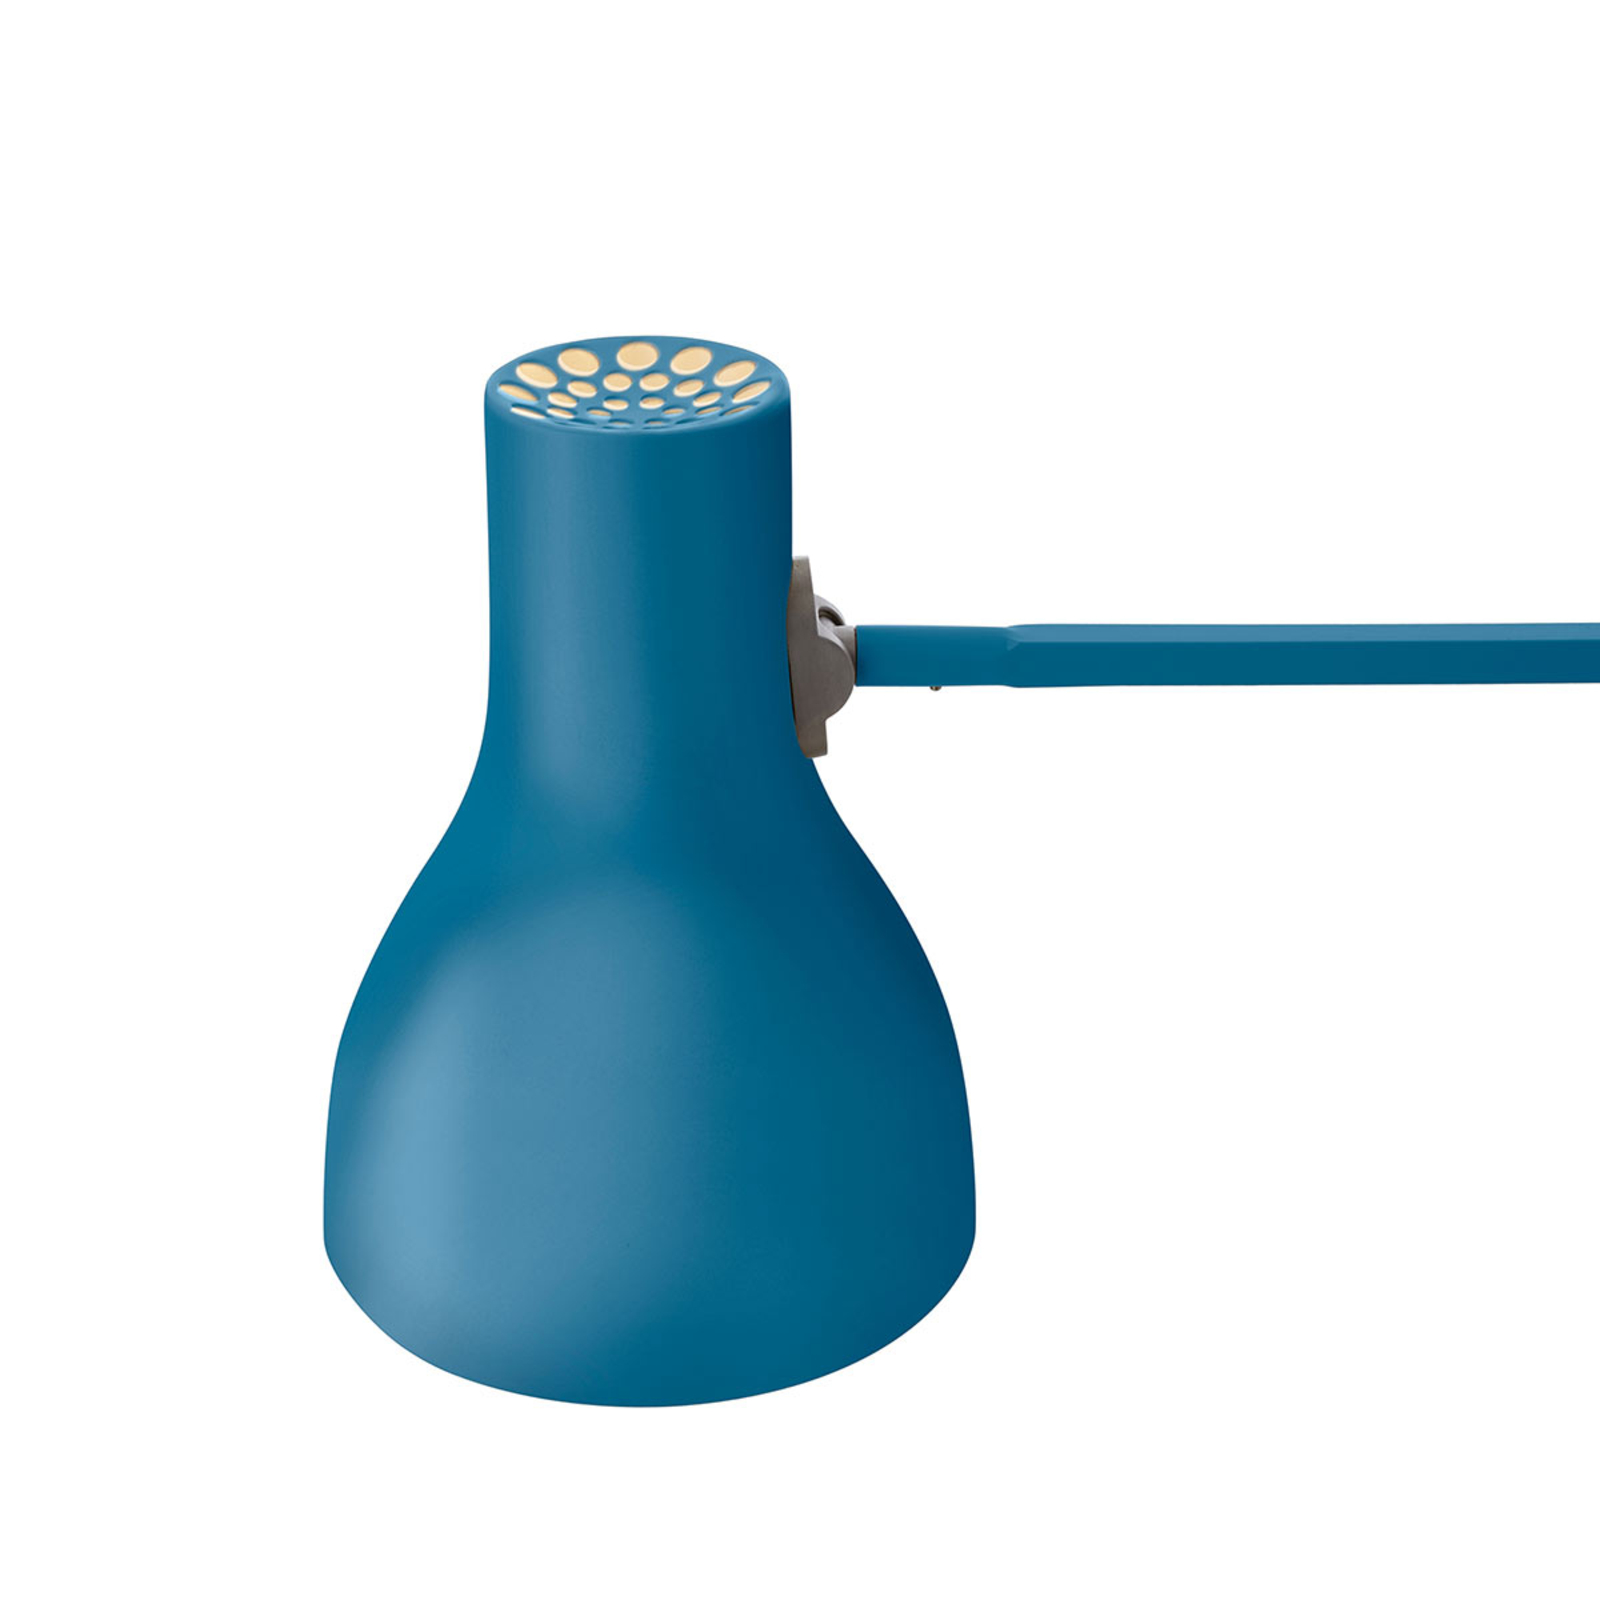 Anglepoise Type 75 tafellamp Margaret Howell blauw